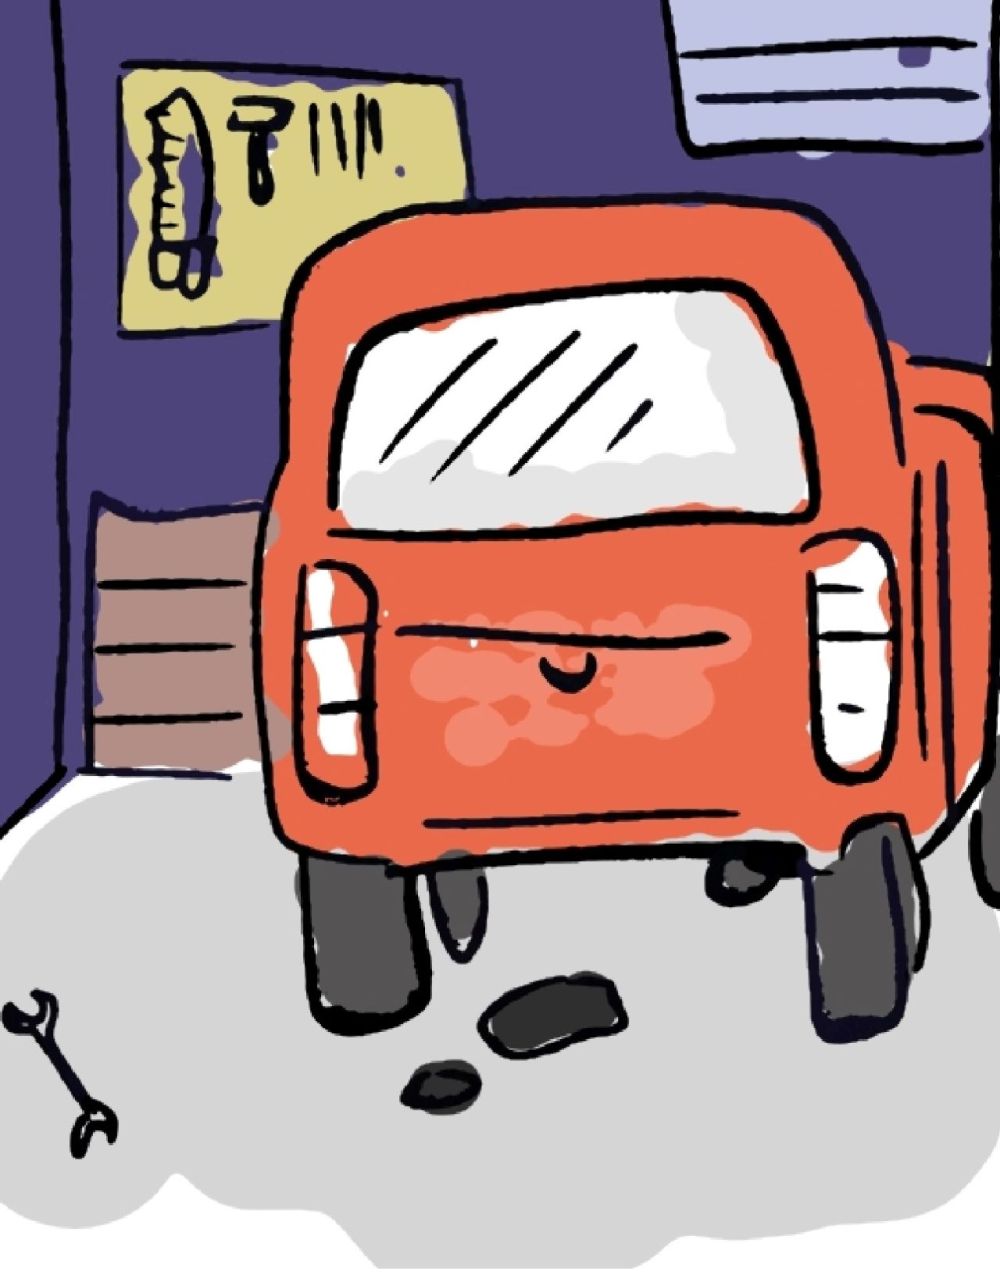 Ilustracijom je prikazana garaža.